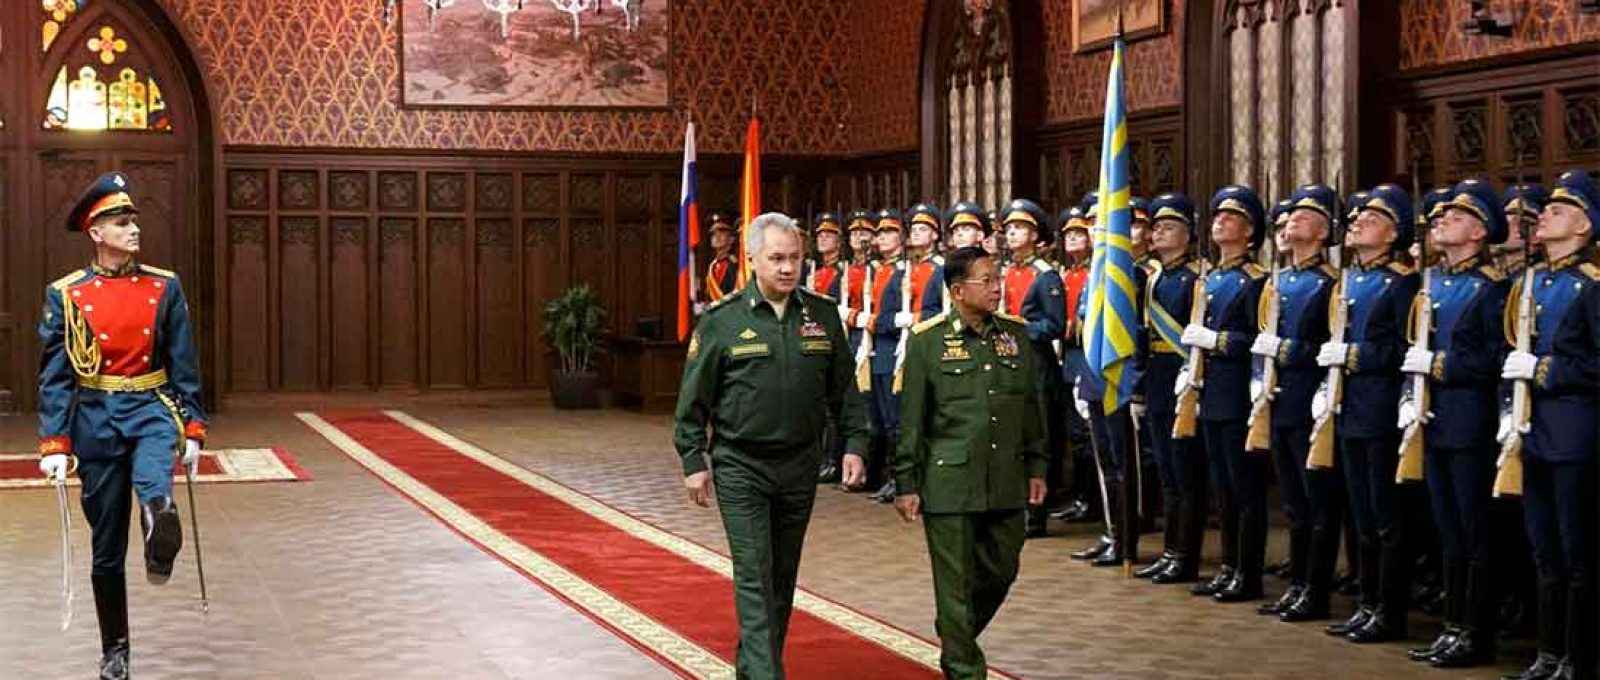 O ministro da Defesa da Rússia, Sergei Shoigu, e o comandante-em-chefe de Mianmar, general Min Aung Hlaing, inspecionam guarda de honra (Foto: Vadim Savitskiy/Ministério da Defesa da Rússia).